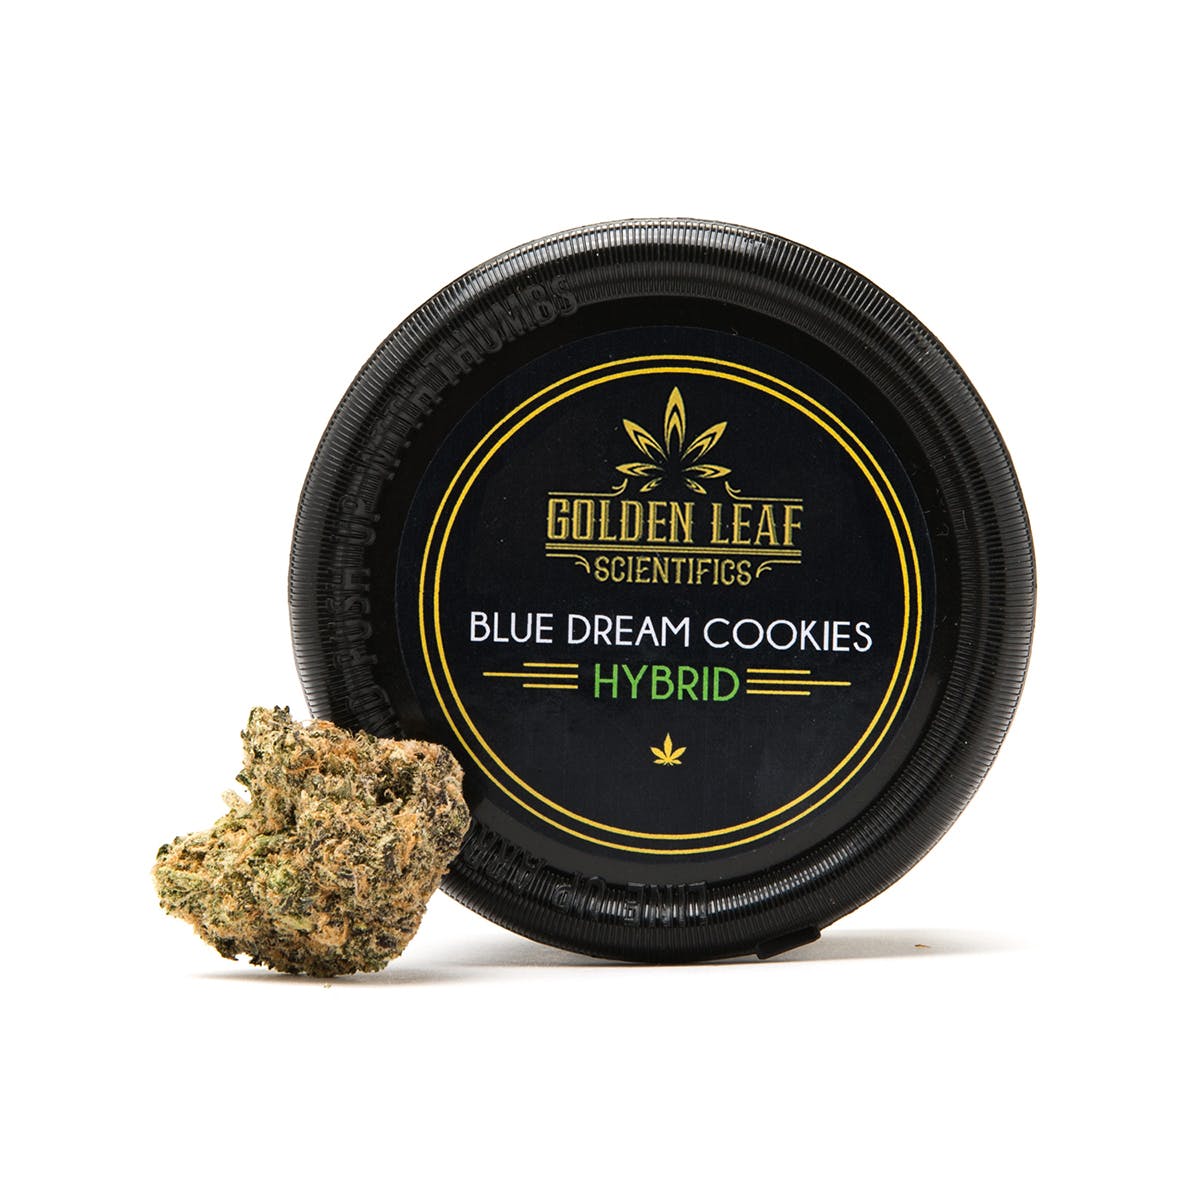 Blue Dream Cookies